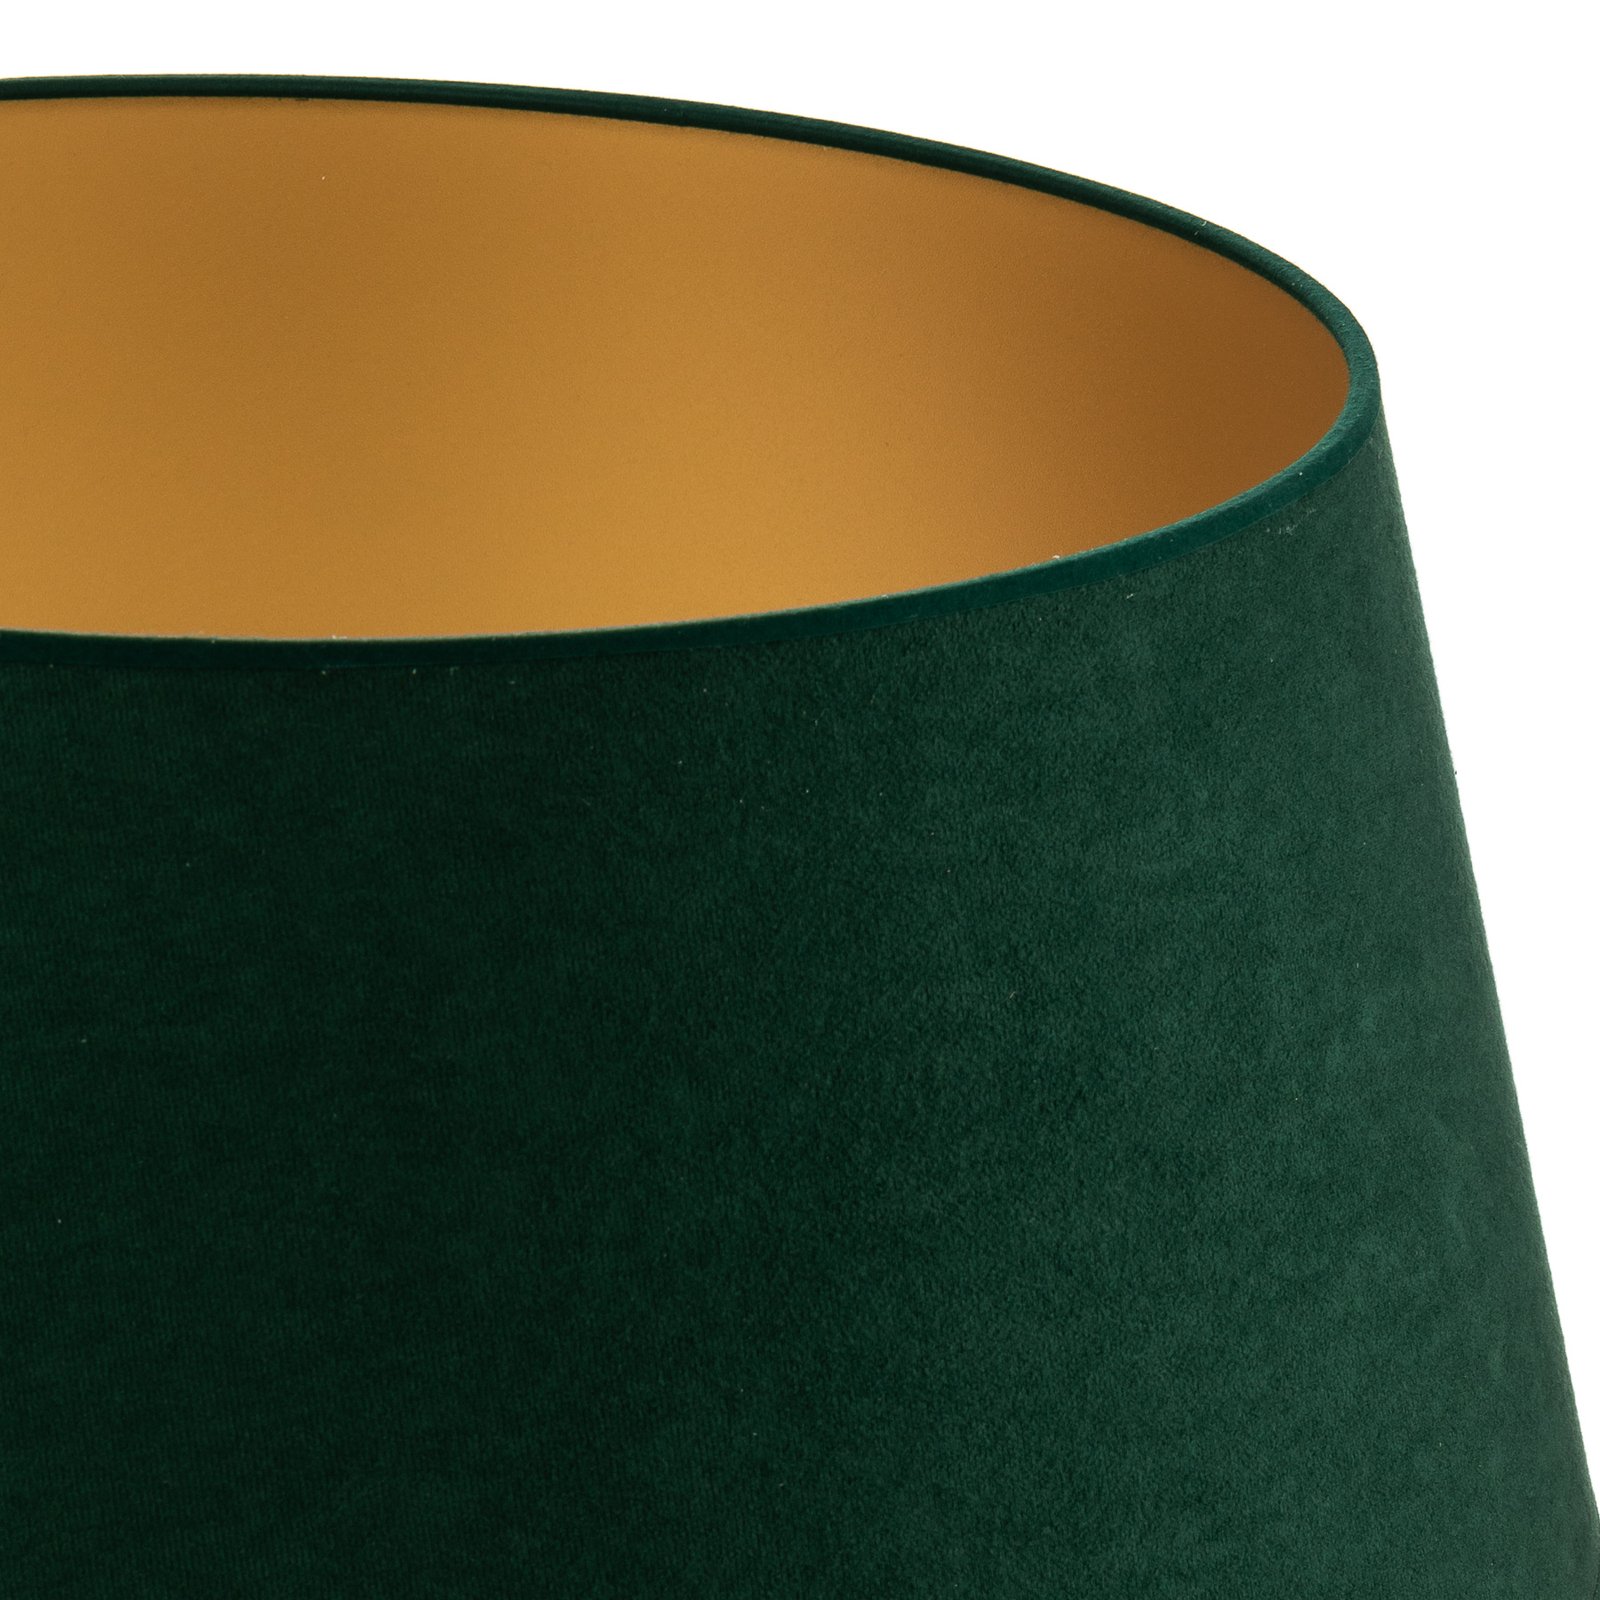 Stínidlo na lampu Cone výška 25,5 cm, zelená/zlatá